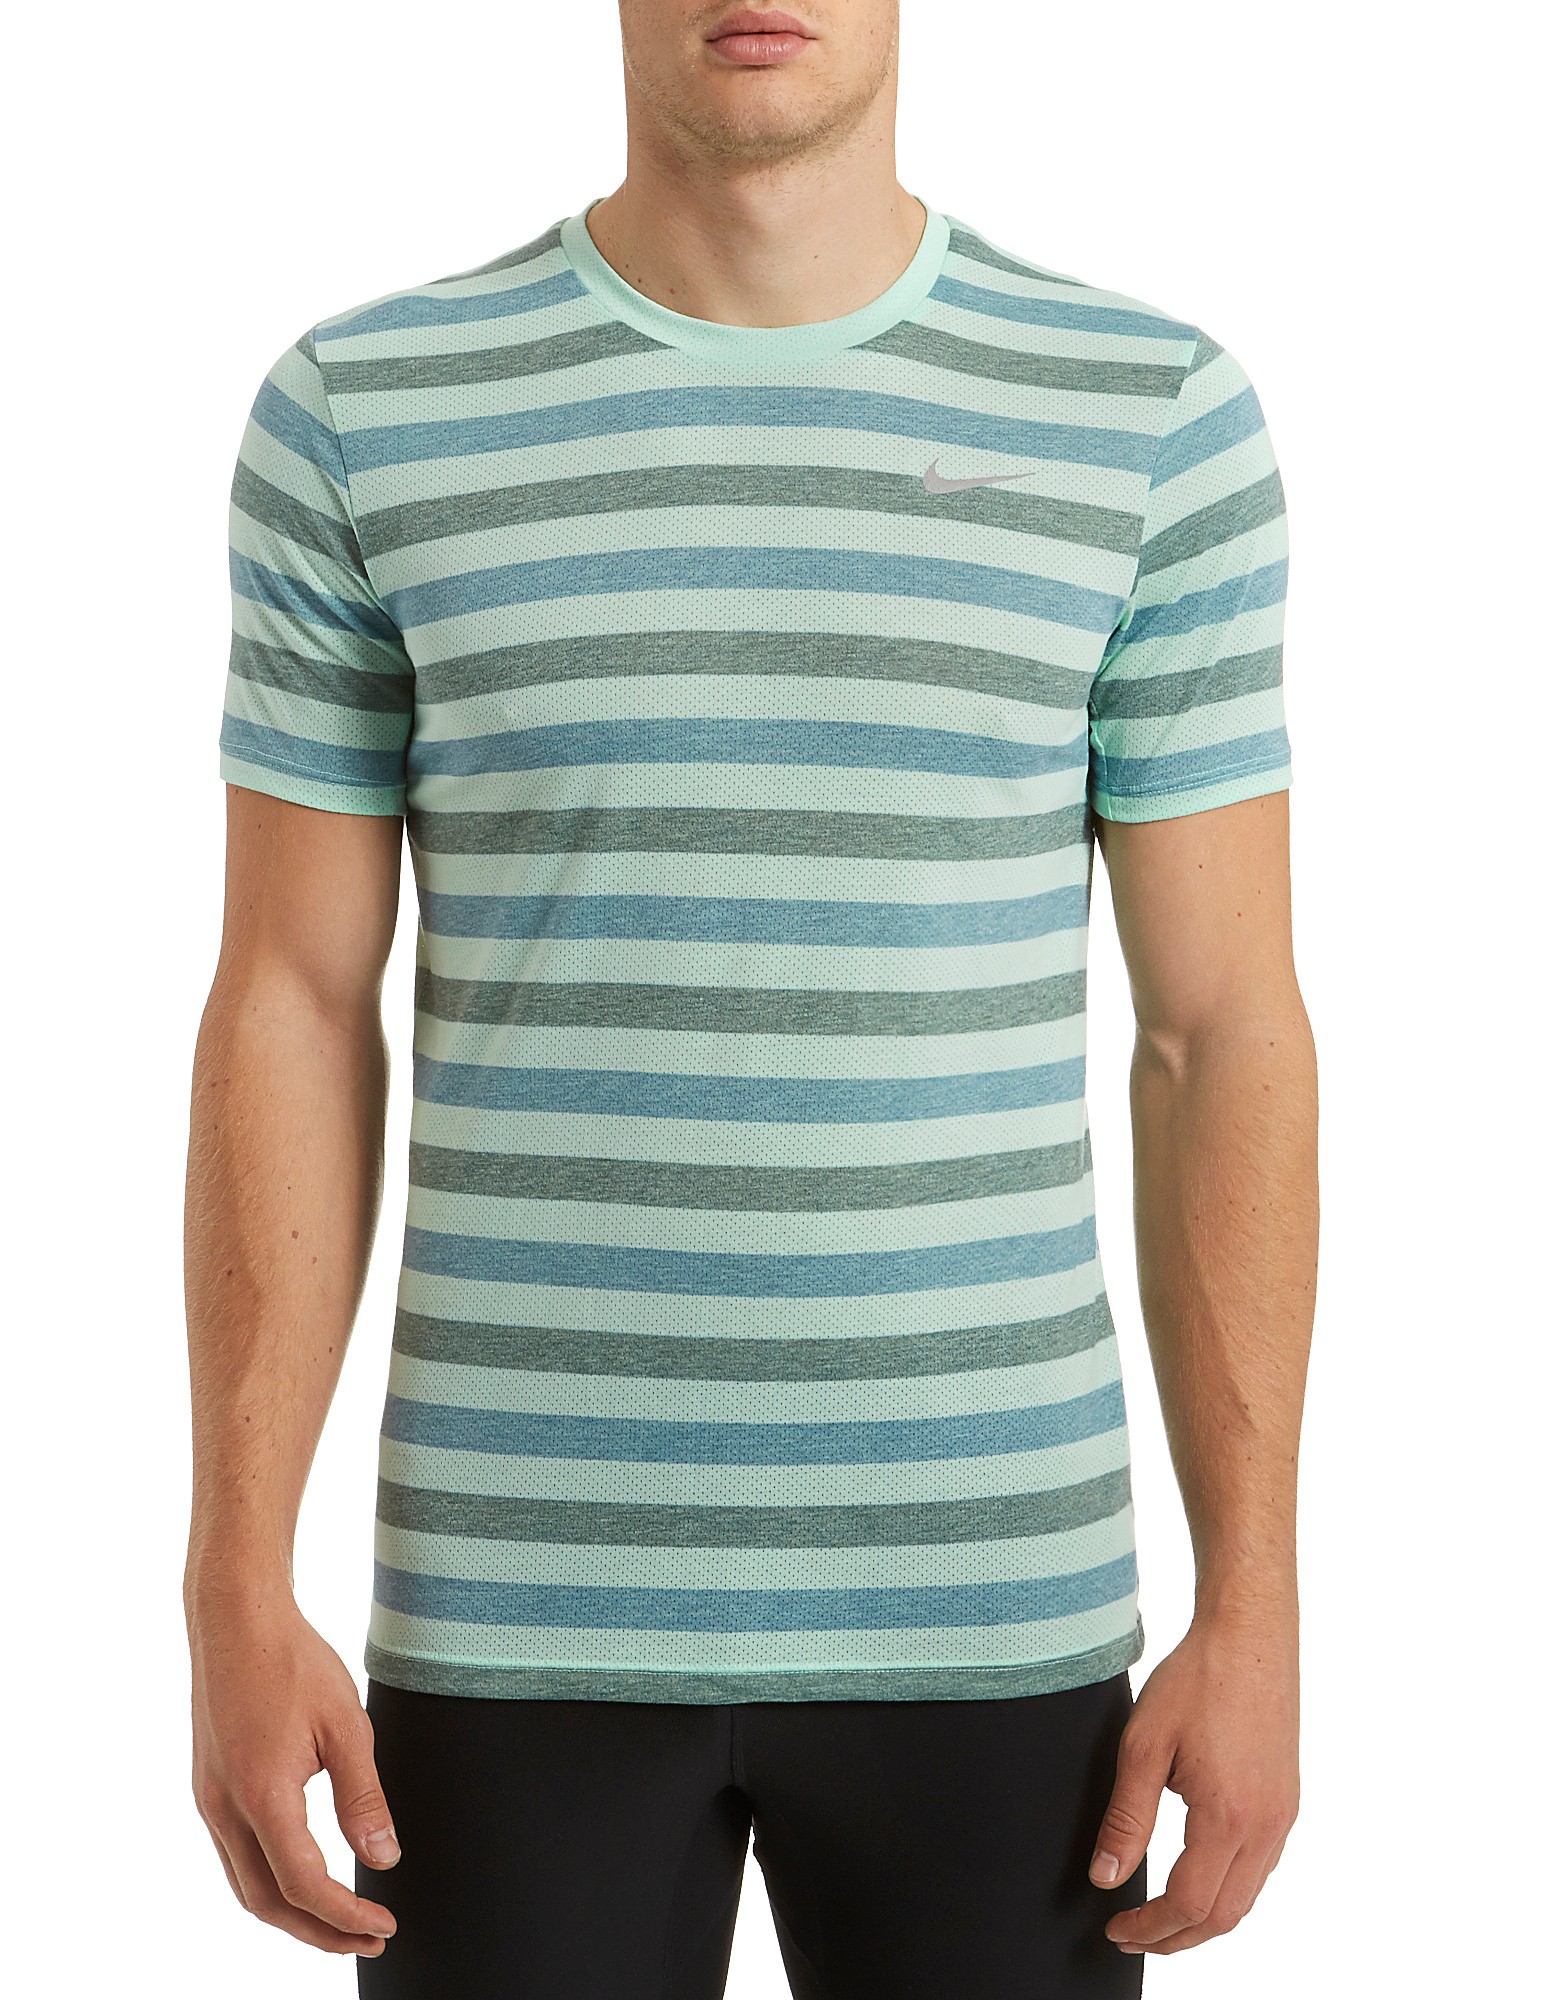 Nike Dri-FIT Tailwind Stripe T-Shirt